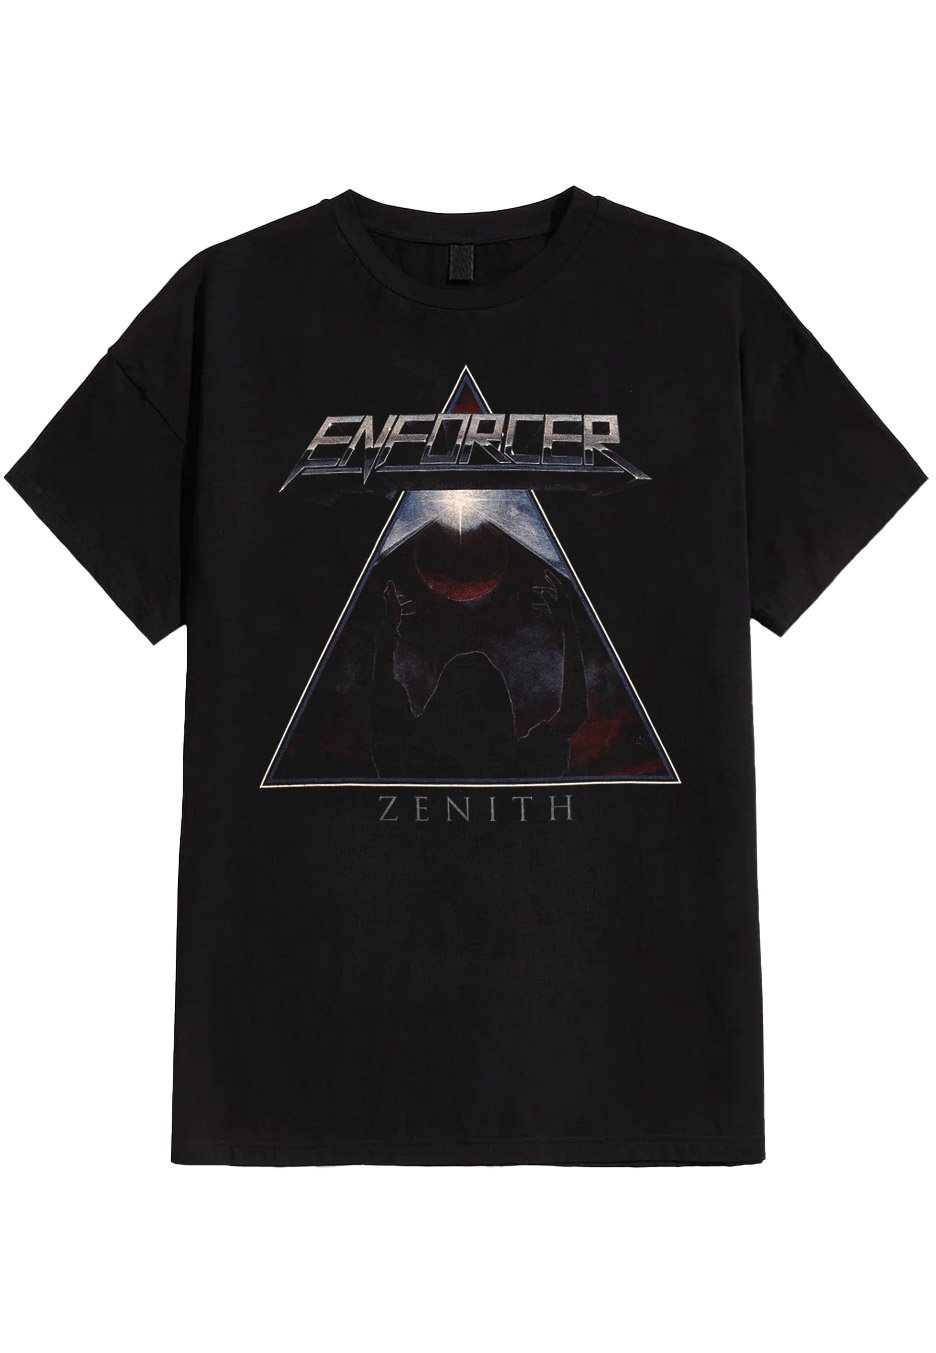 Enforcer - Zenith - T-Shirt